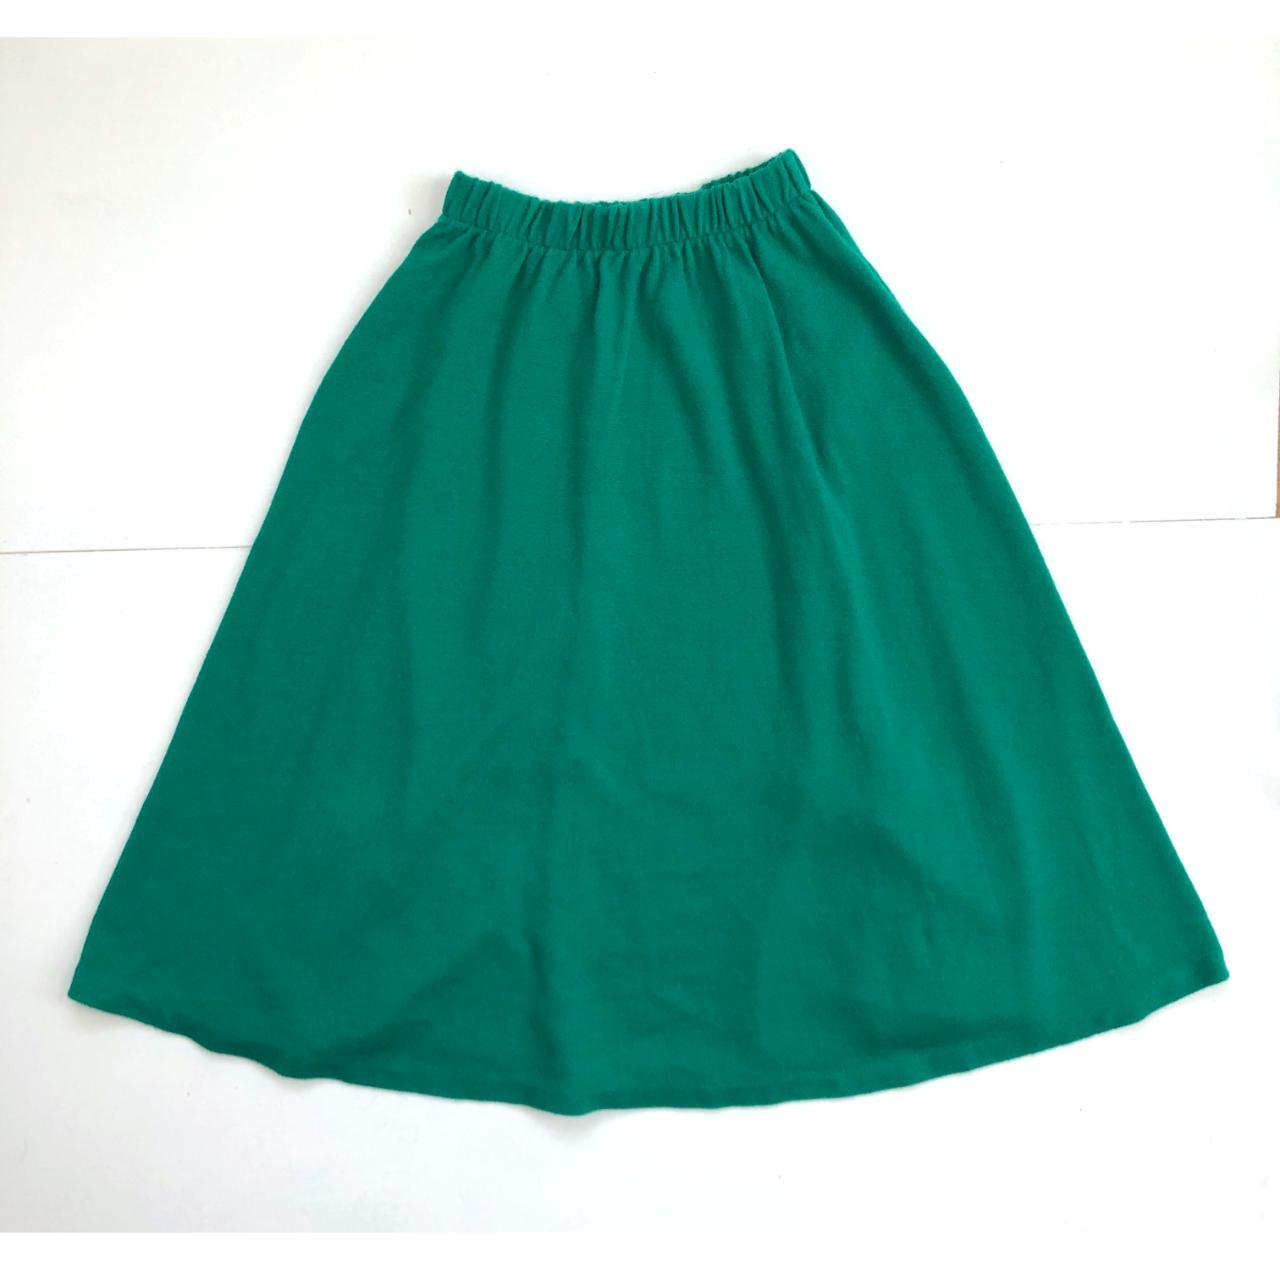 Vintage Knit Acrylic Skirt | 70s Bright Jade Green... - Depop